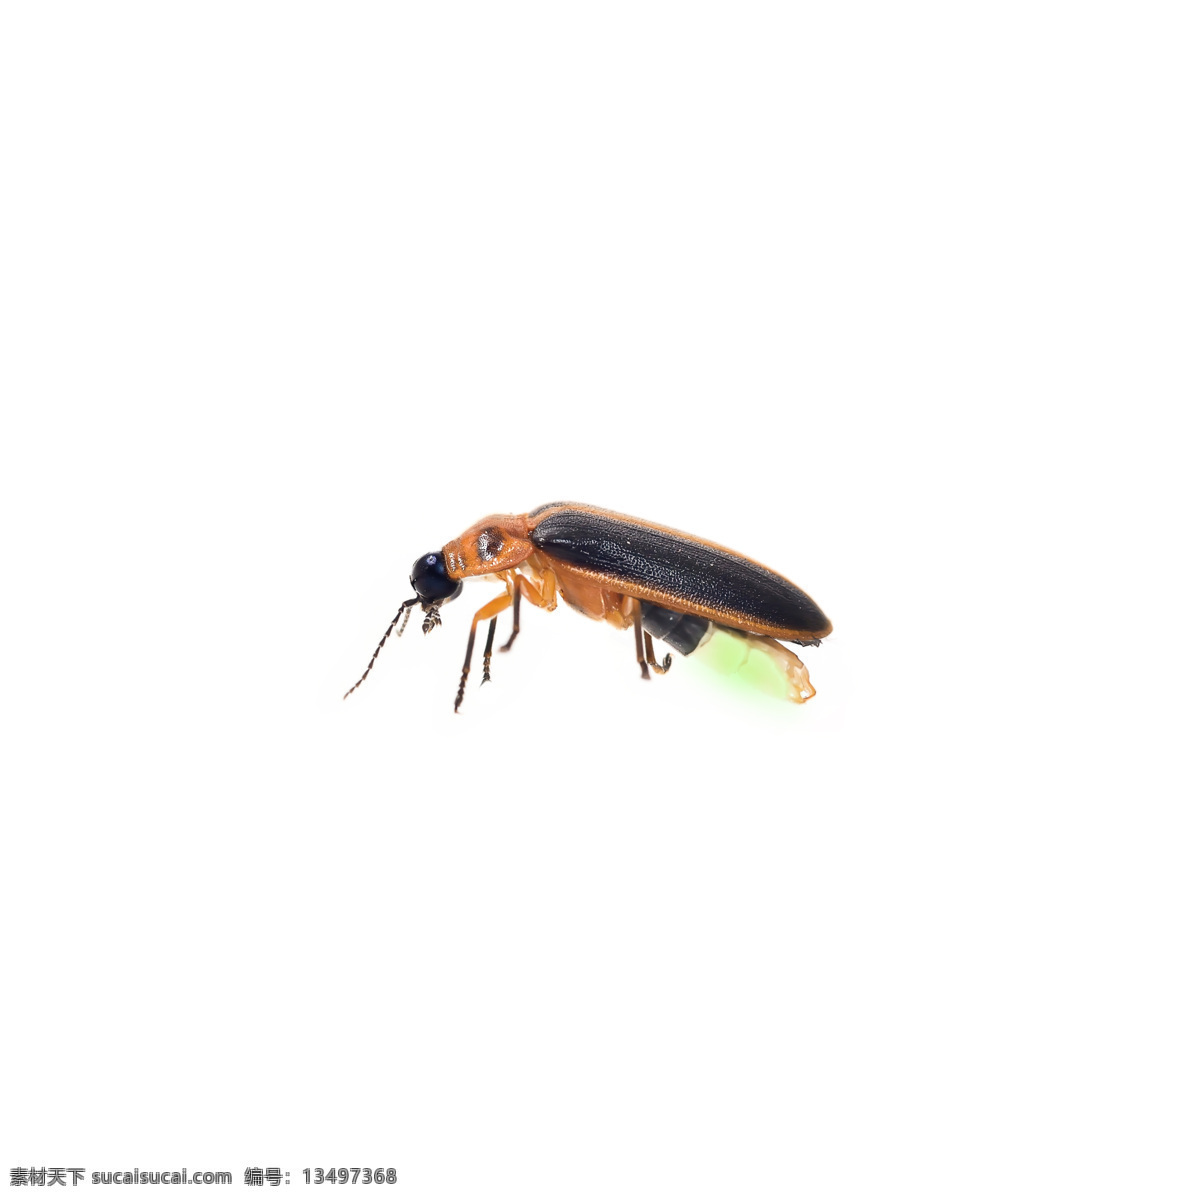 萤火虫 昆虫 动物 背景 海报 素材图片 杂图